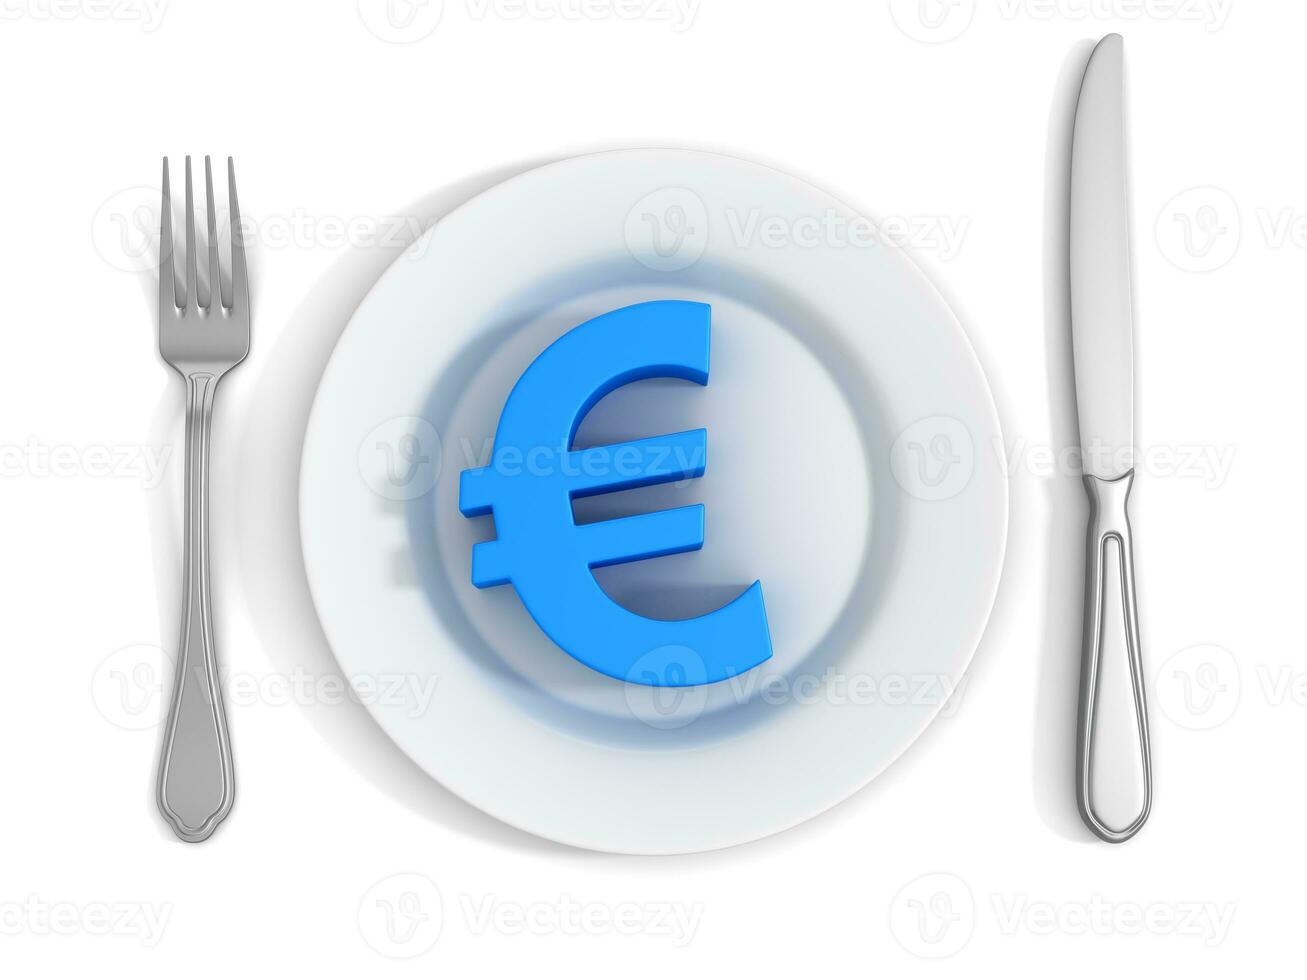 Euro Symbol on White Plate photo